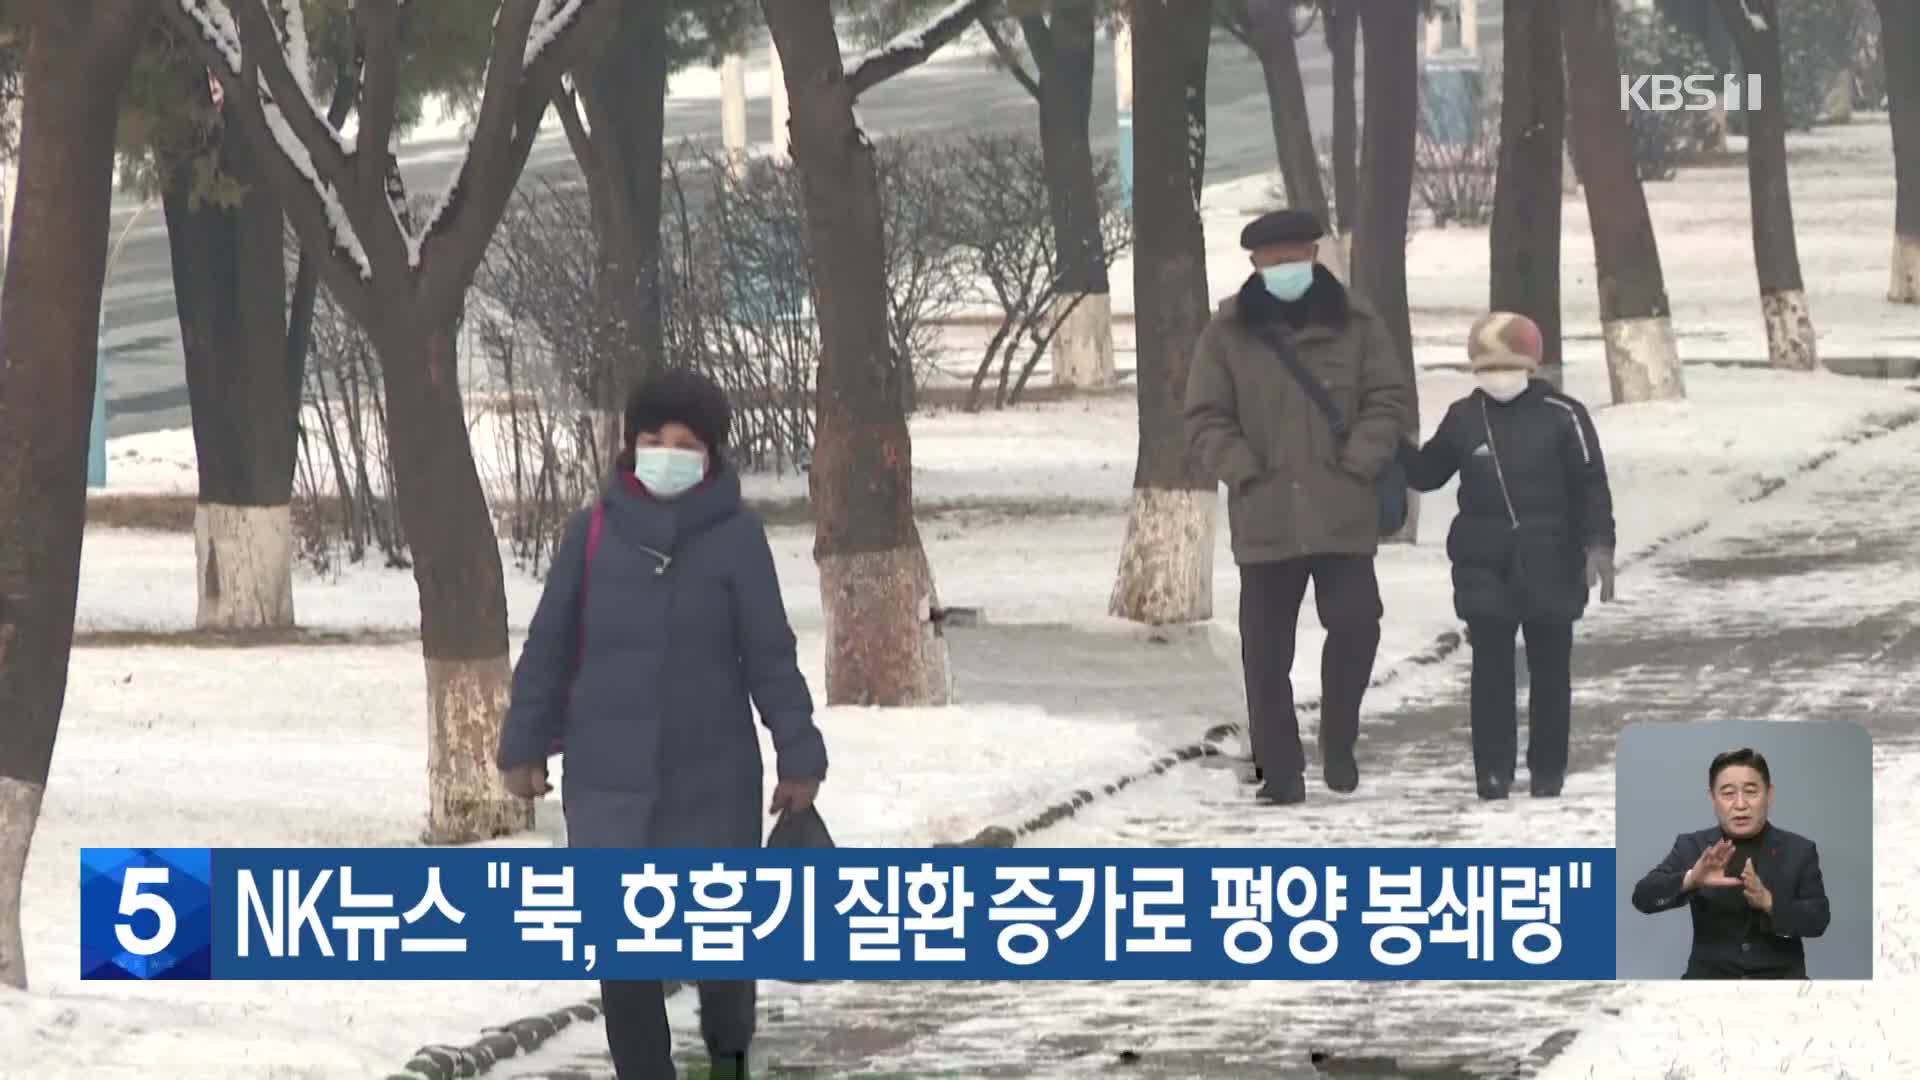 NK뉴스 “북, 호흡기 질환 증가로 평양 봉쇄령”